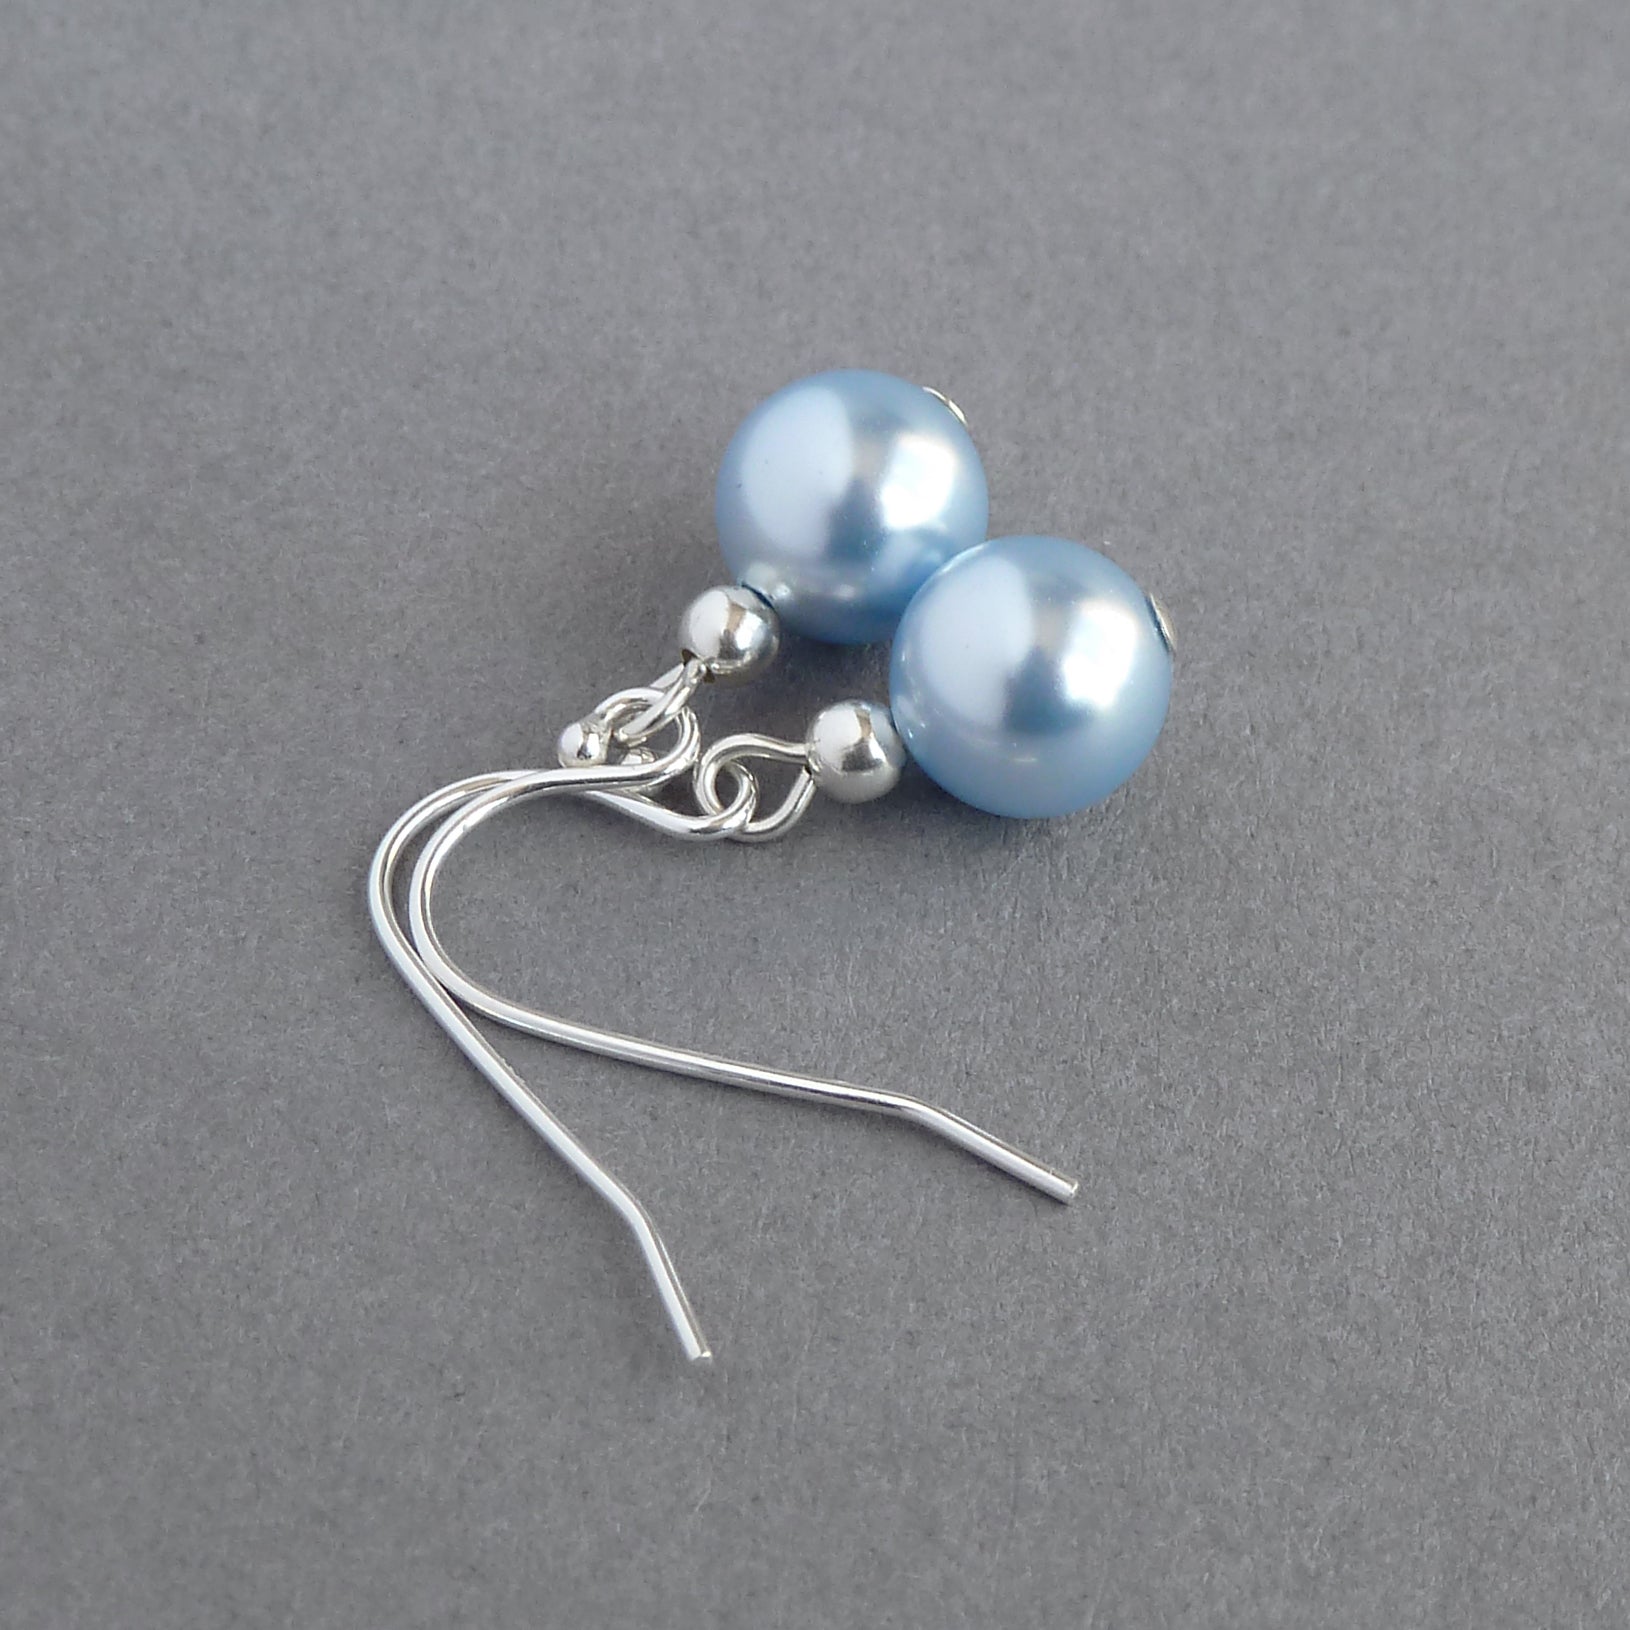 Pale blue pearl earrings